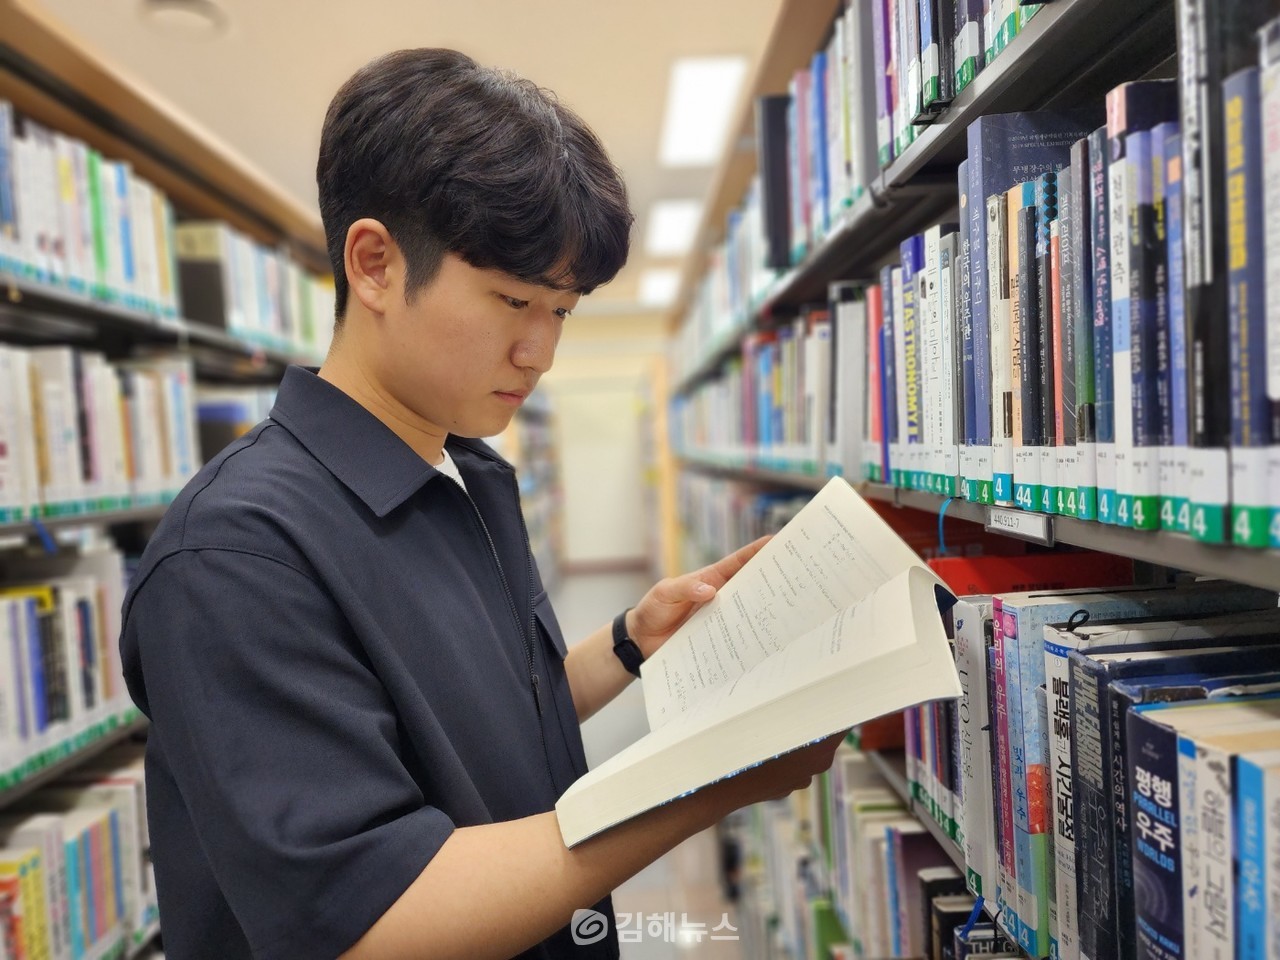 손성현 씨는 가장 좋아하는 책 중 하나를 '수학의 정석'이라고 밝혔다. 그는 군더더기 없이 깔끔하다고 이 책의 장점을 소개했다. 사진은 김해도서관 열람식에서 책을 고르고 있는 손 씨의 모습. (사진=송희영 기자)